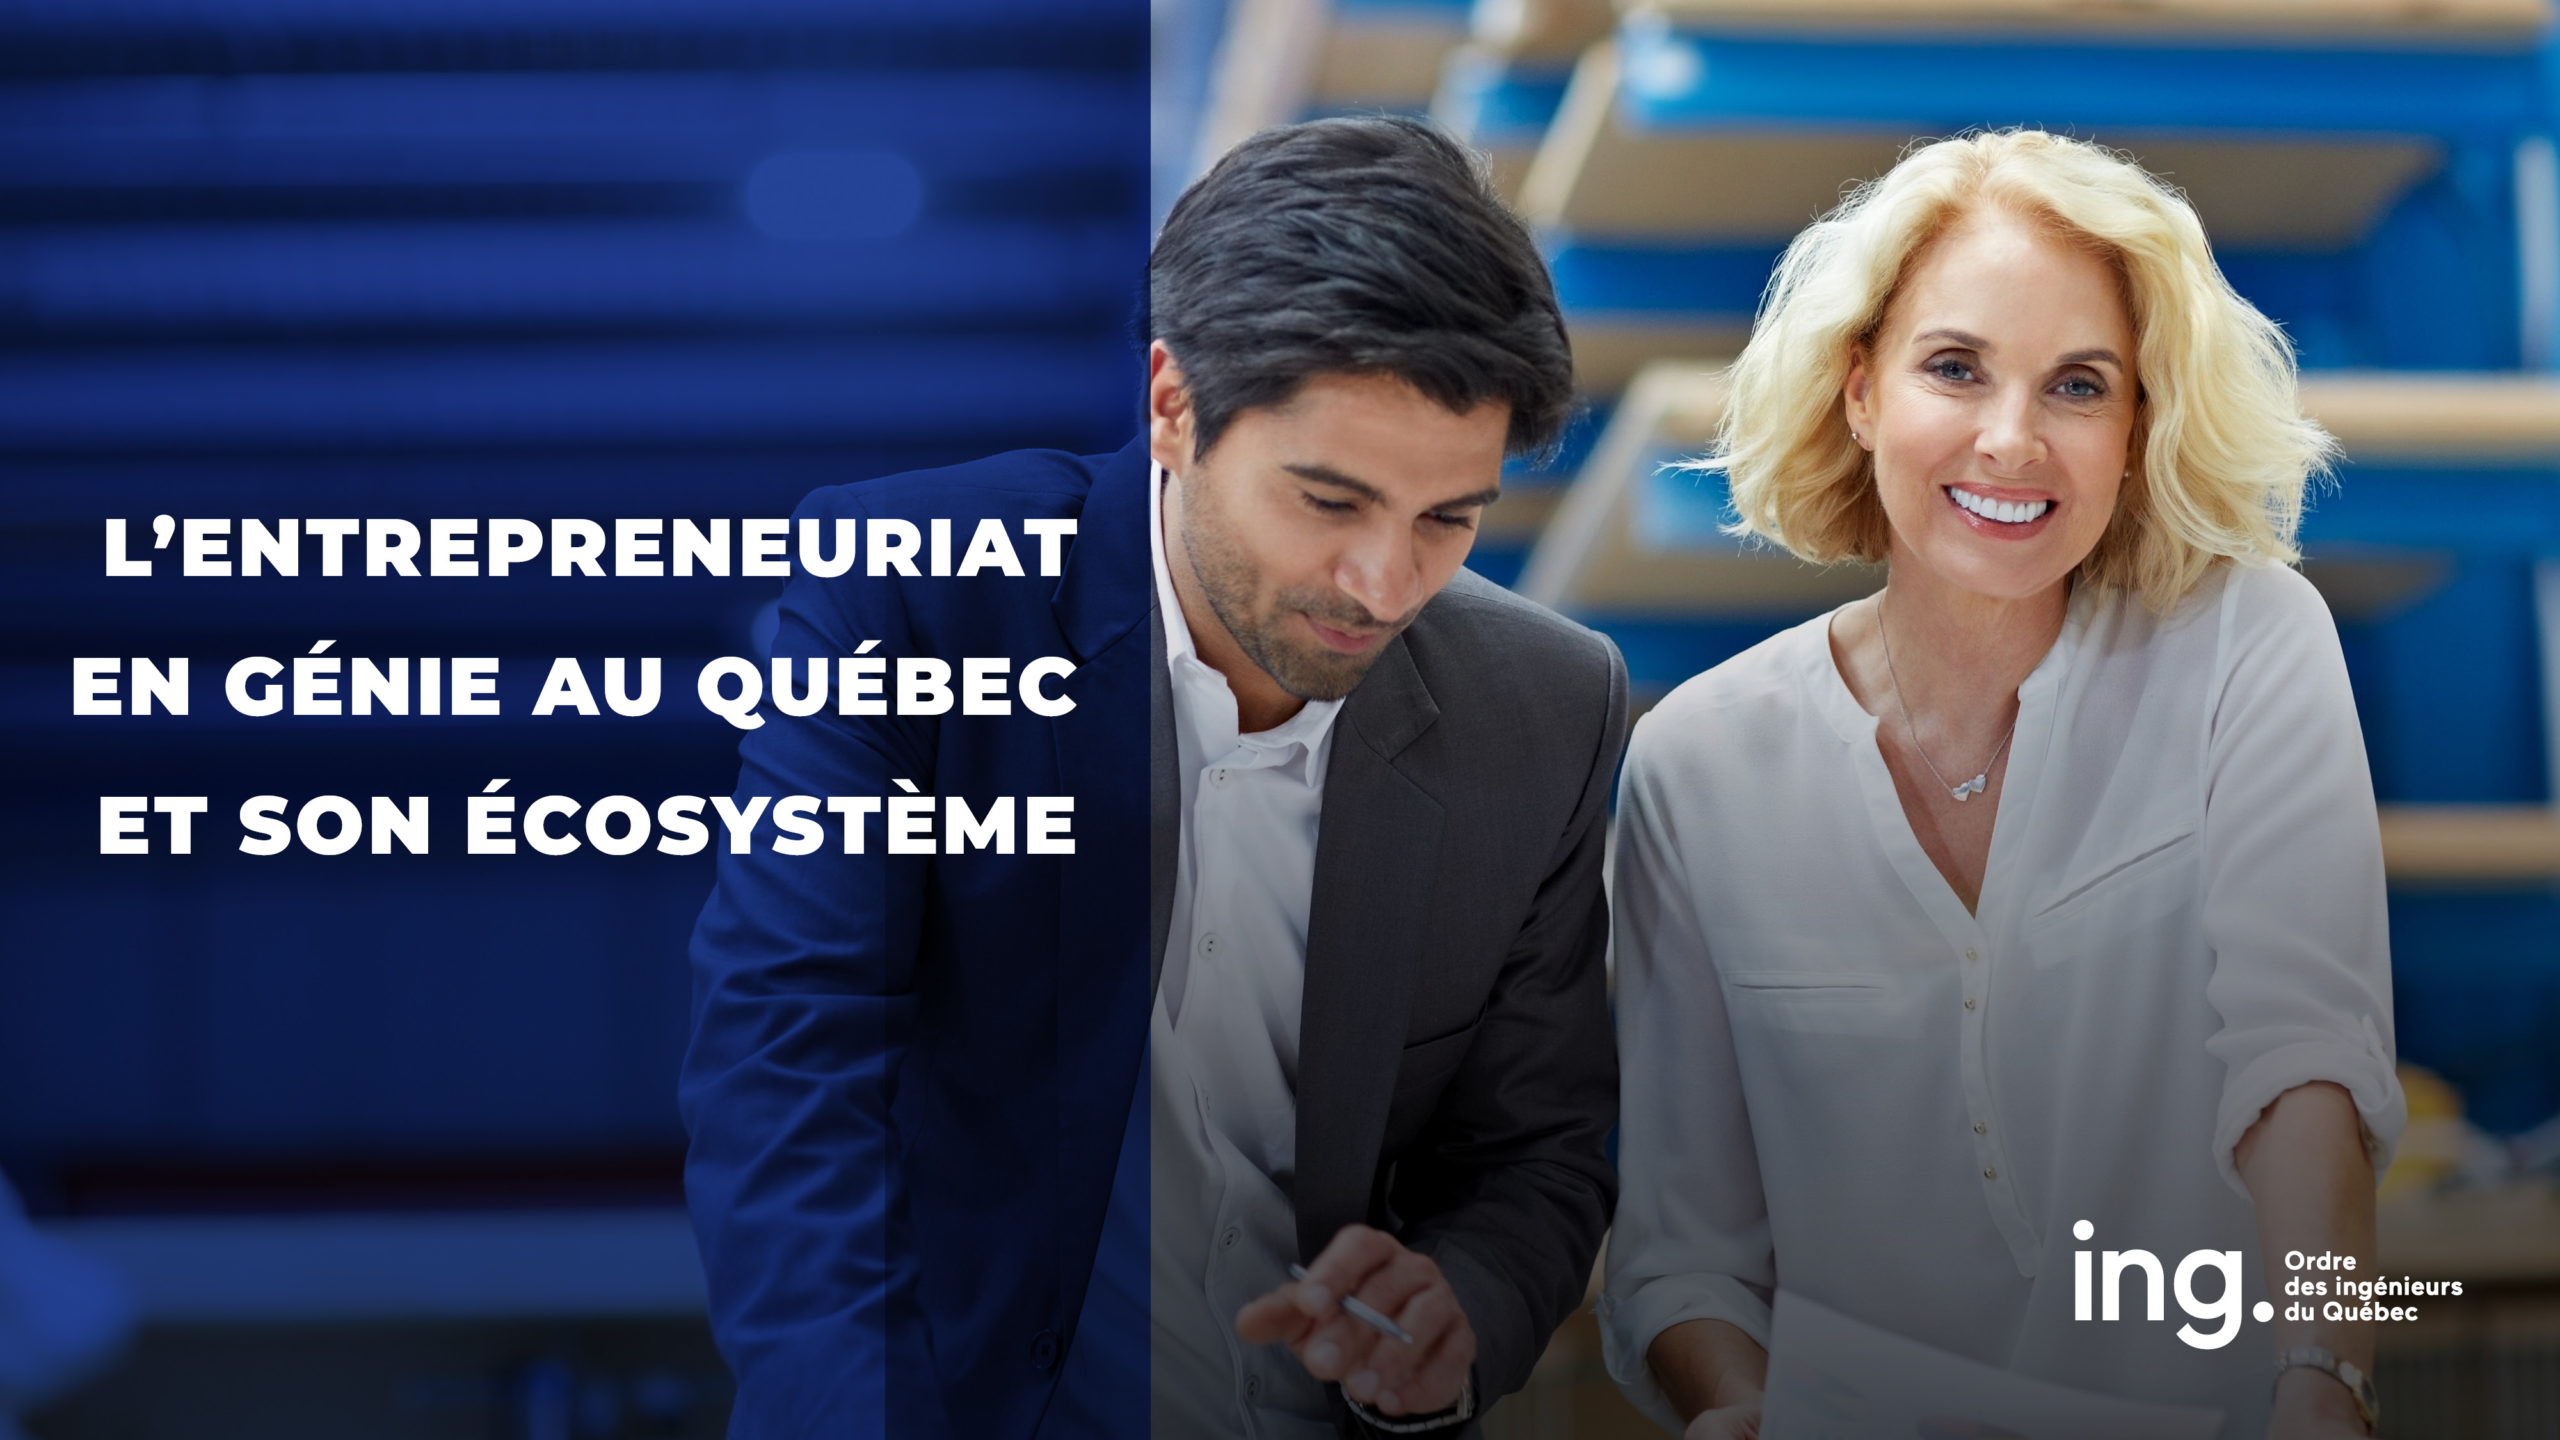 Entrepreneuriat en génie : l’Ordre des ingénieurs du Québec dévoile une étude dressant le profil du génie entrepreneurial et de son apport à la prospérité du Québec